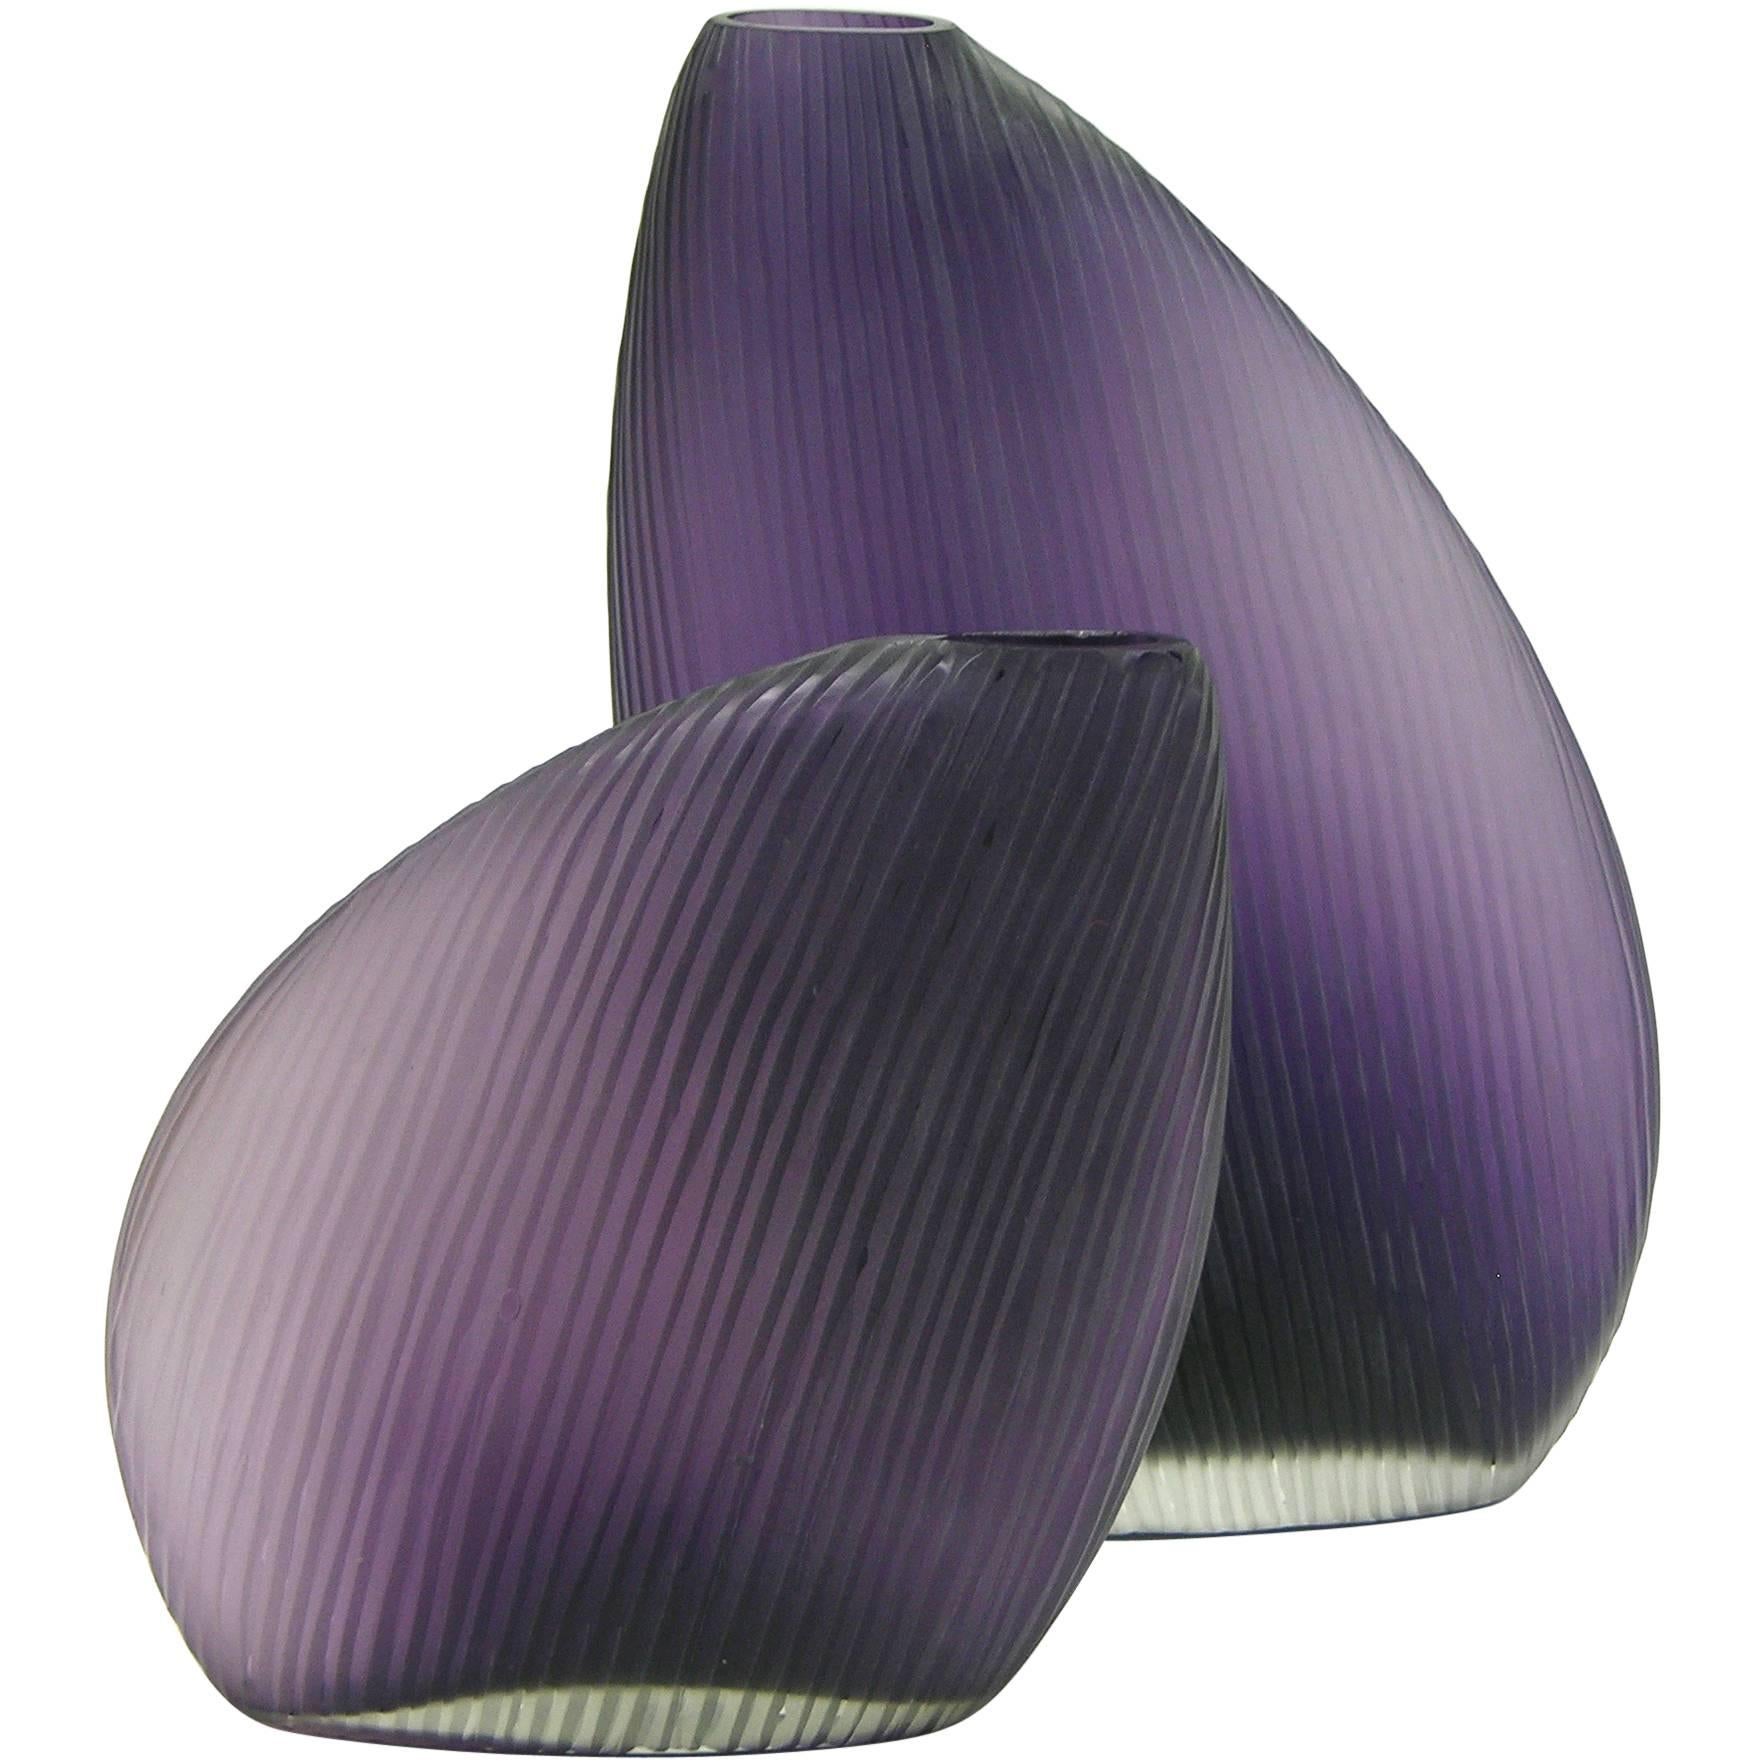 Vistosi 1970s Italian Modern Pair of Organic Purple Murano Glass Vases